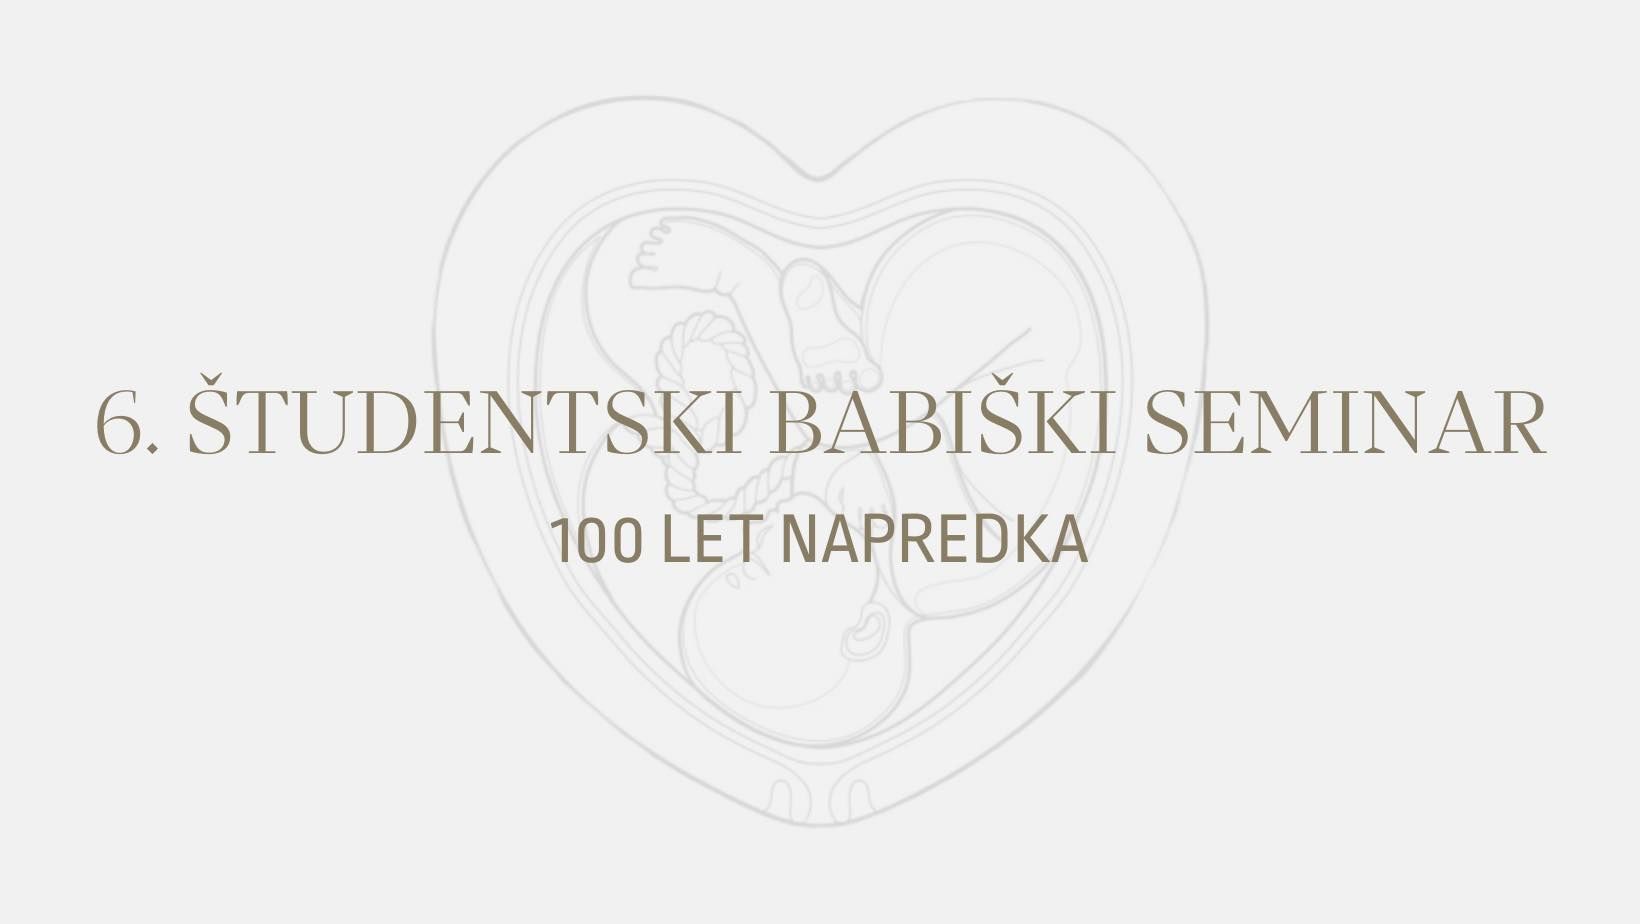 Logo babiski seminar